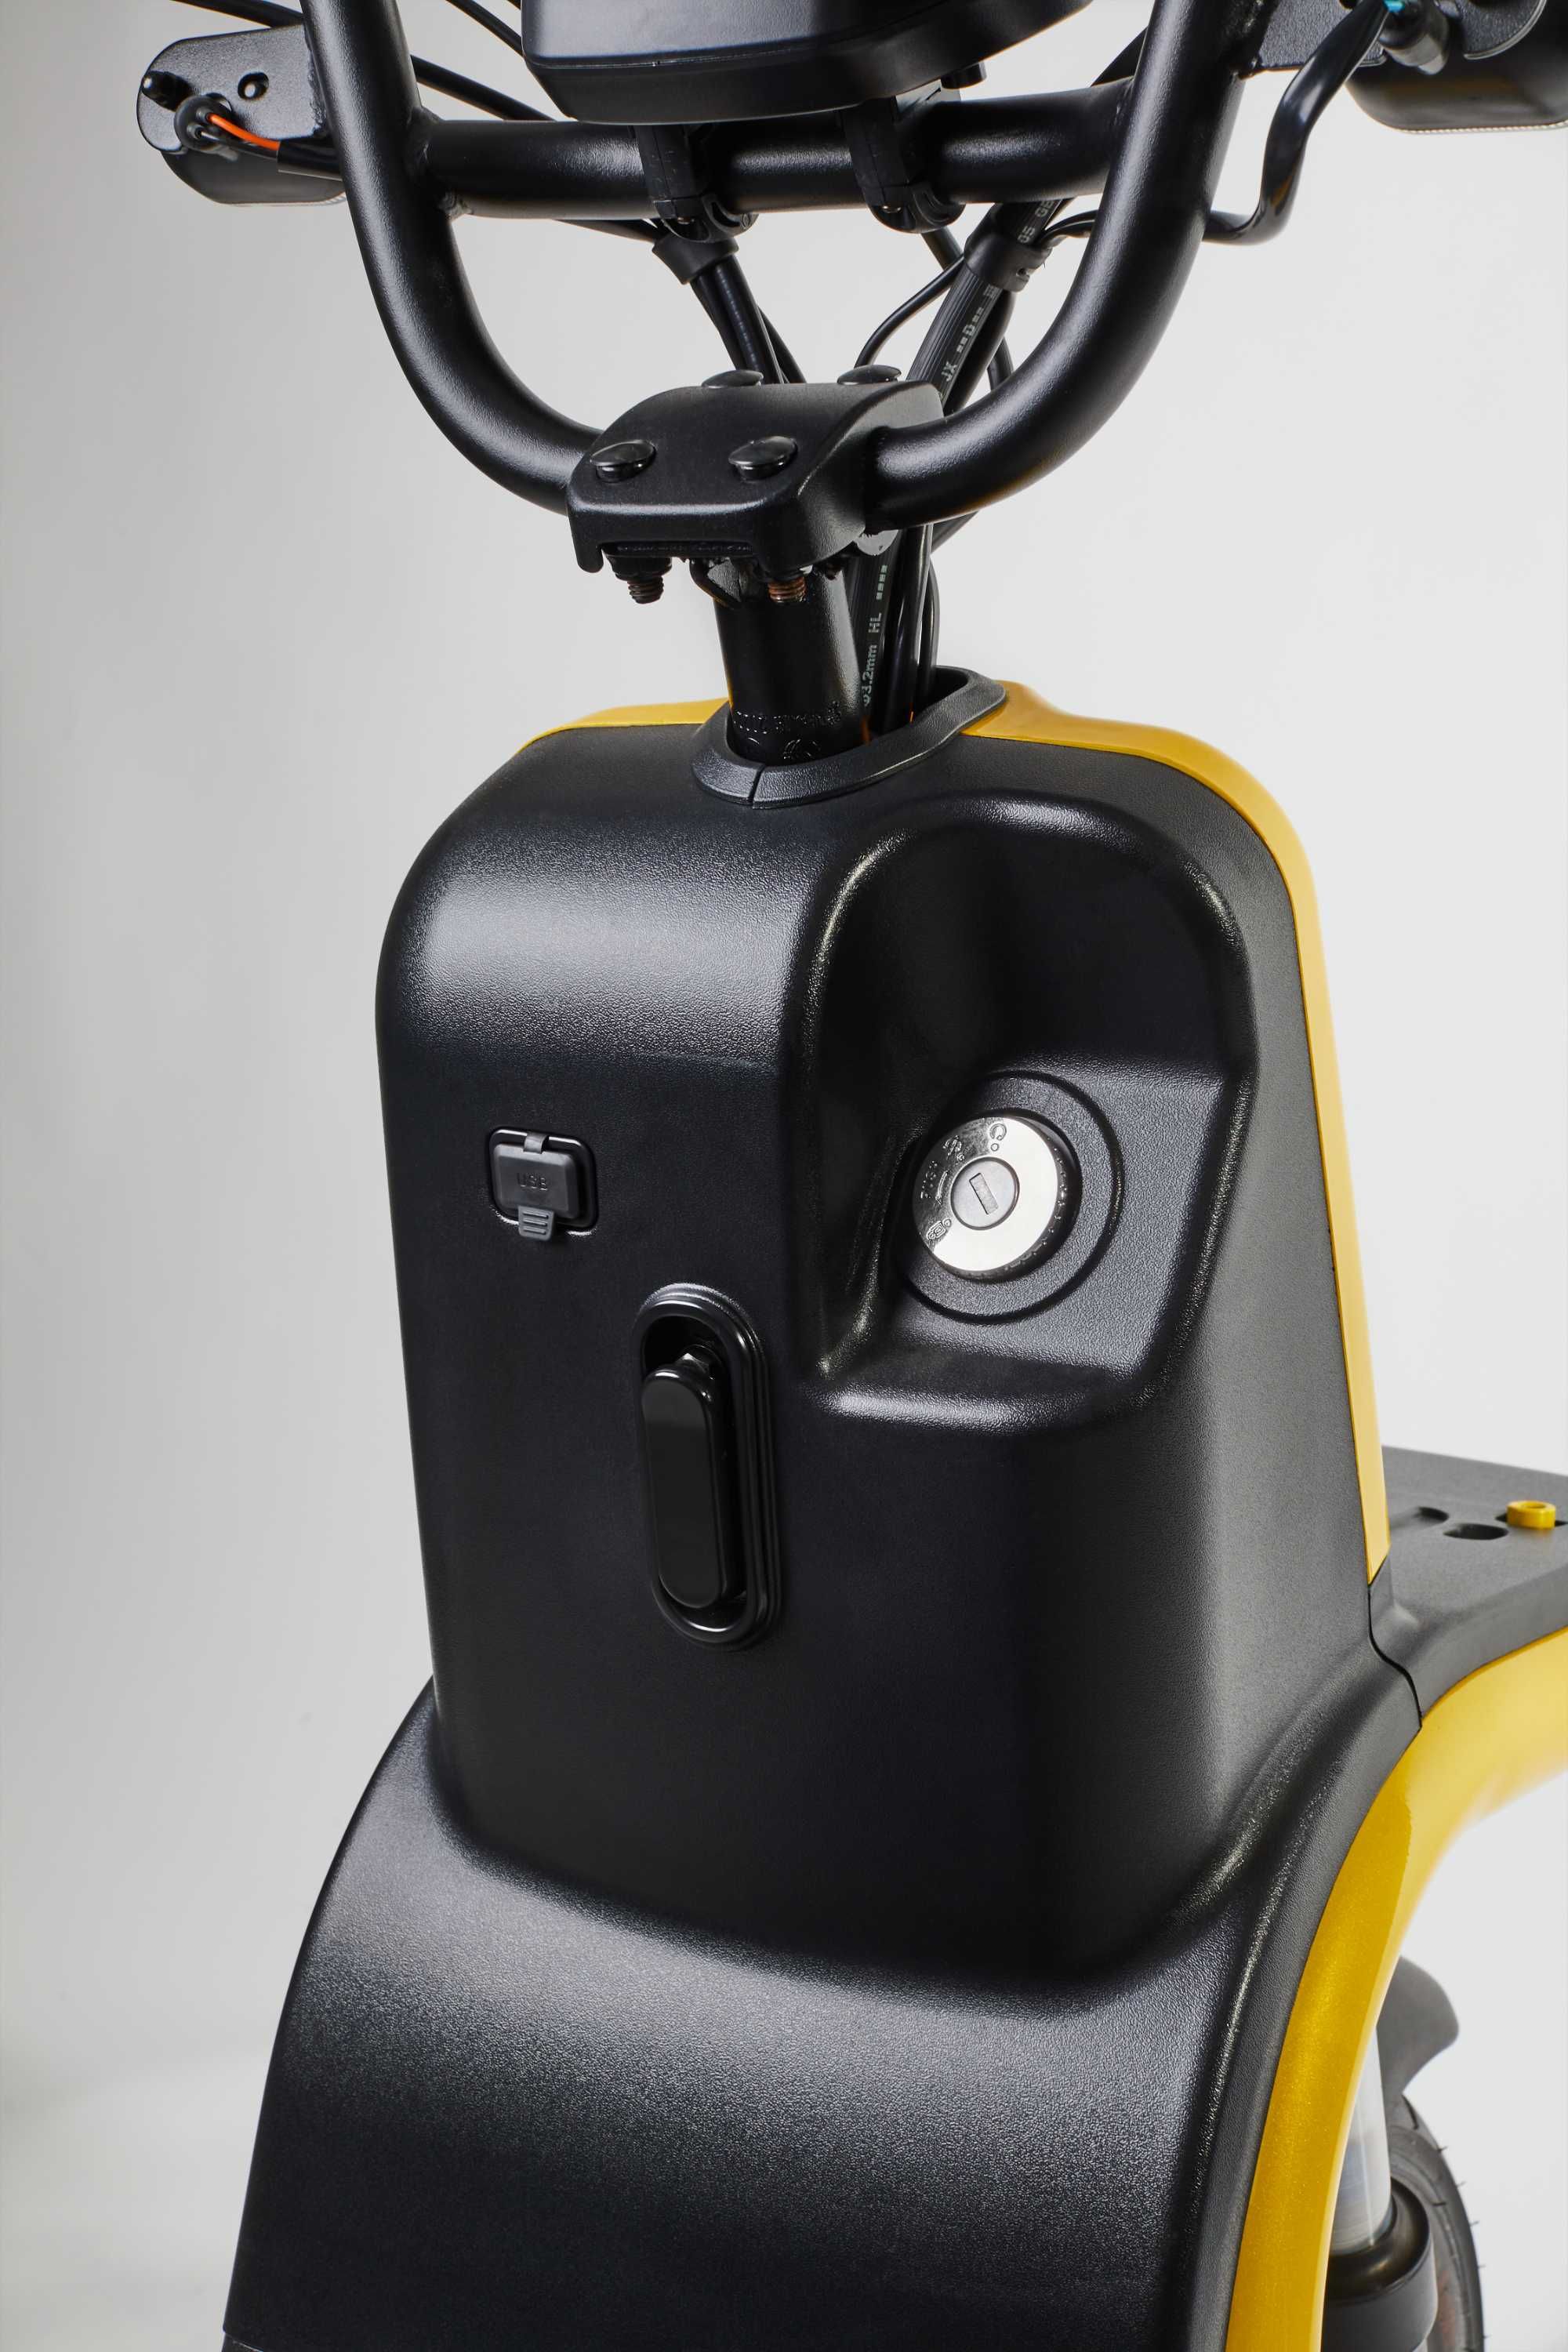 Scooter Elétrica Bee com parcelamento em 4x sem juros